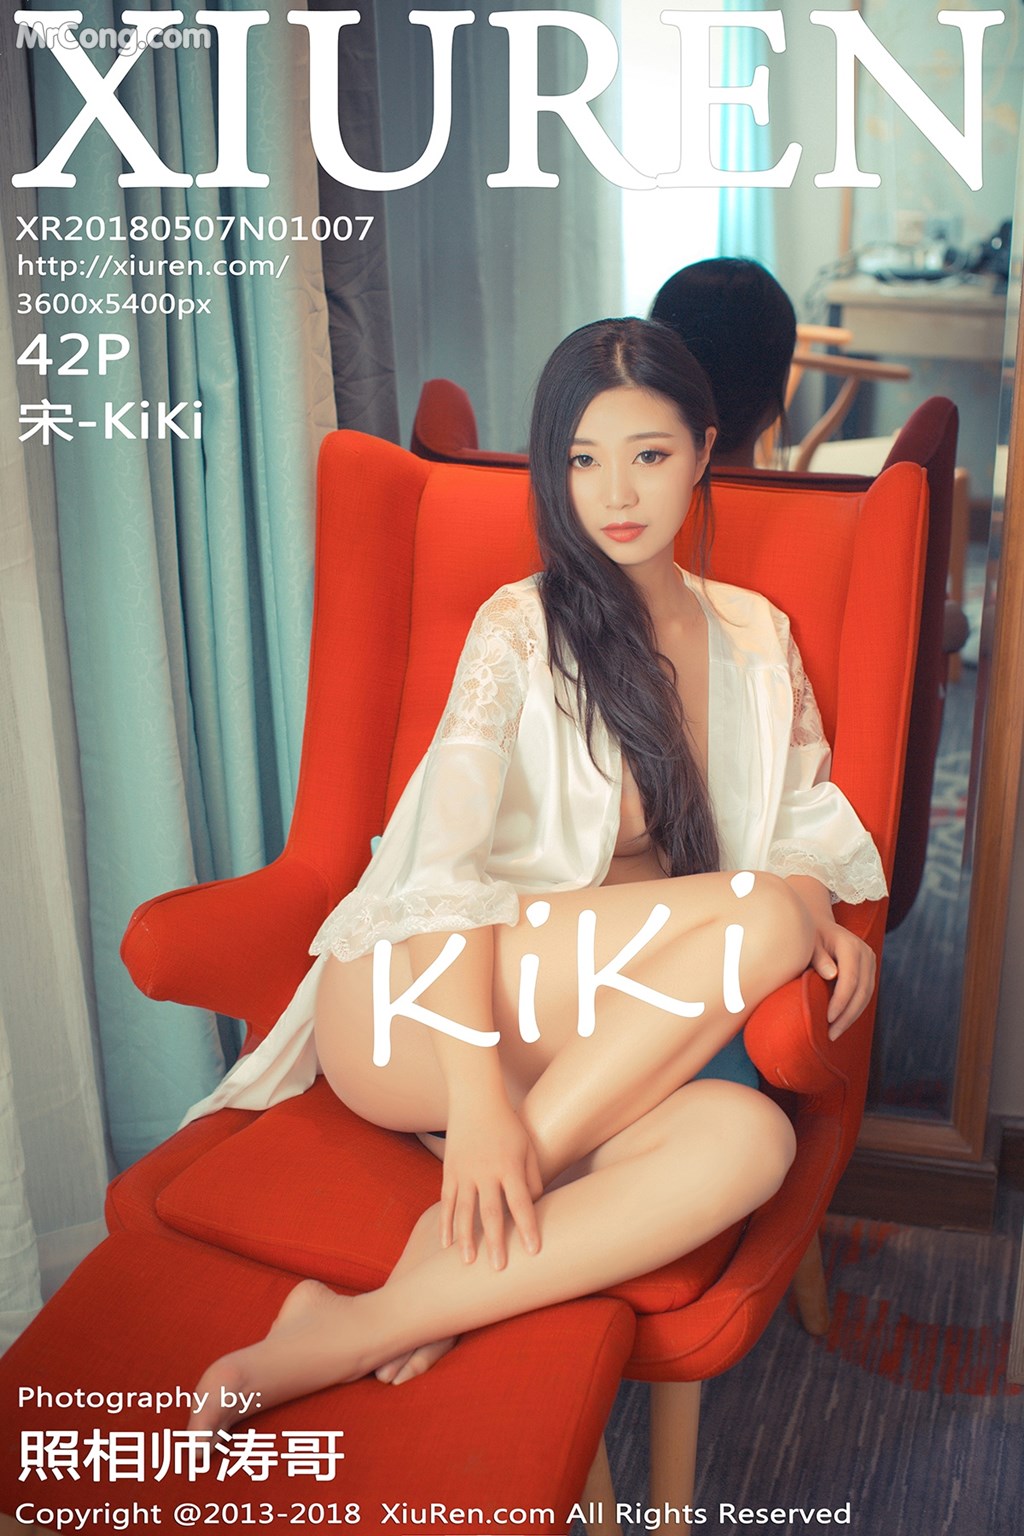 XIUREN No.1007: Model 宋 -KiKi (43 photos) photo 1-0